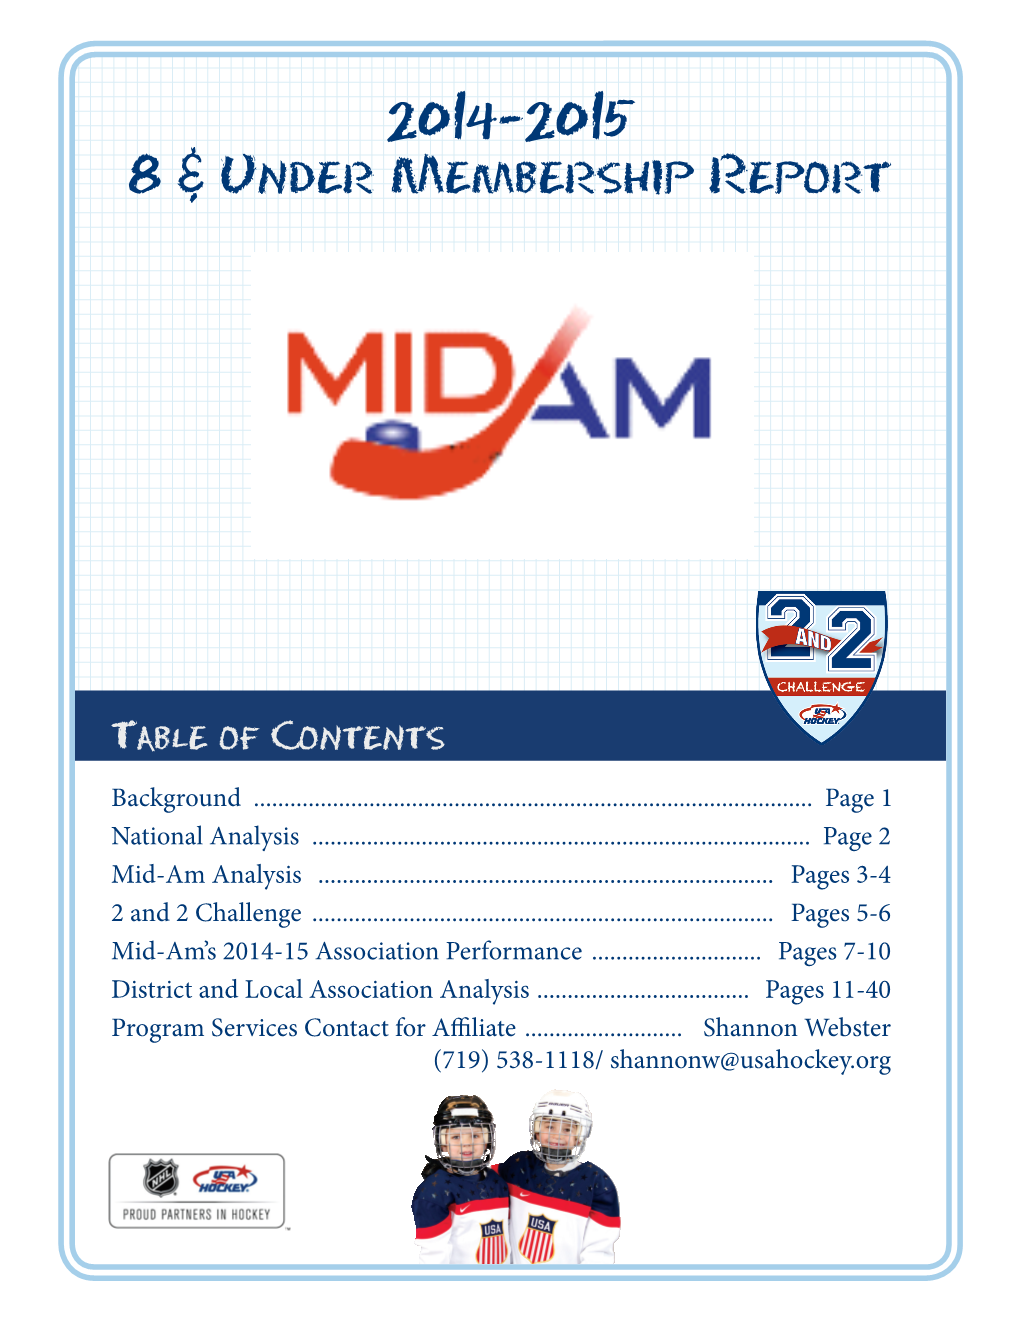 2014-2015 8 & Under Membership Report